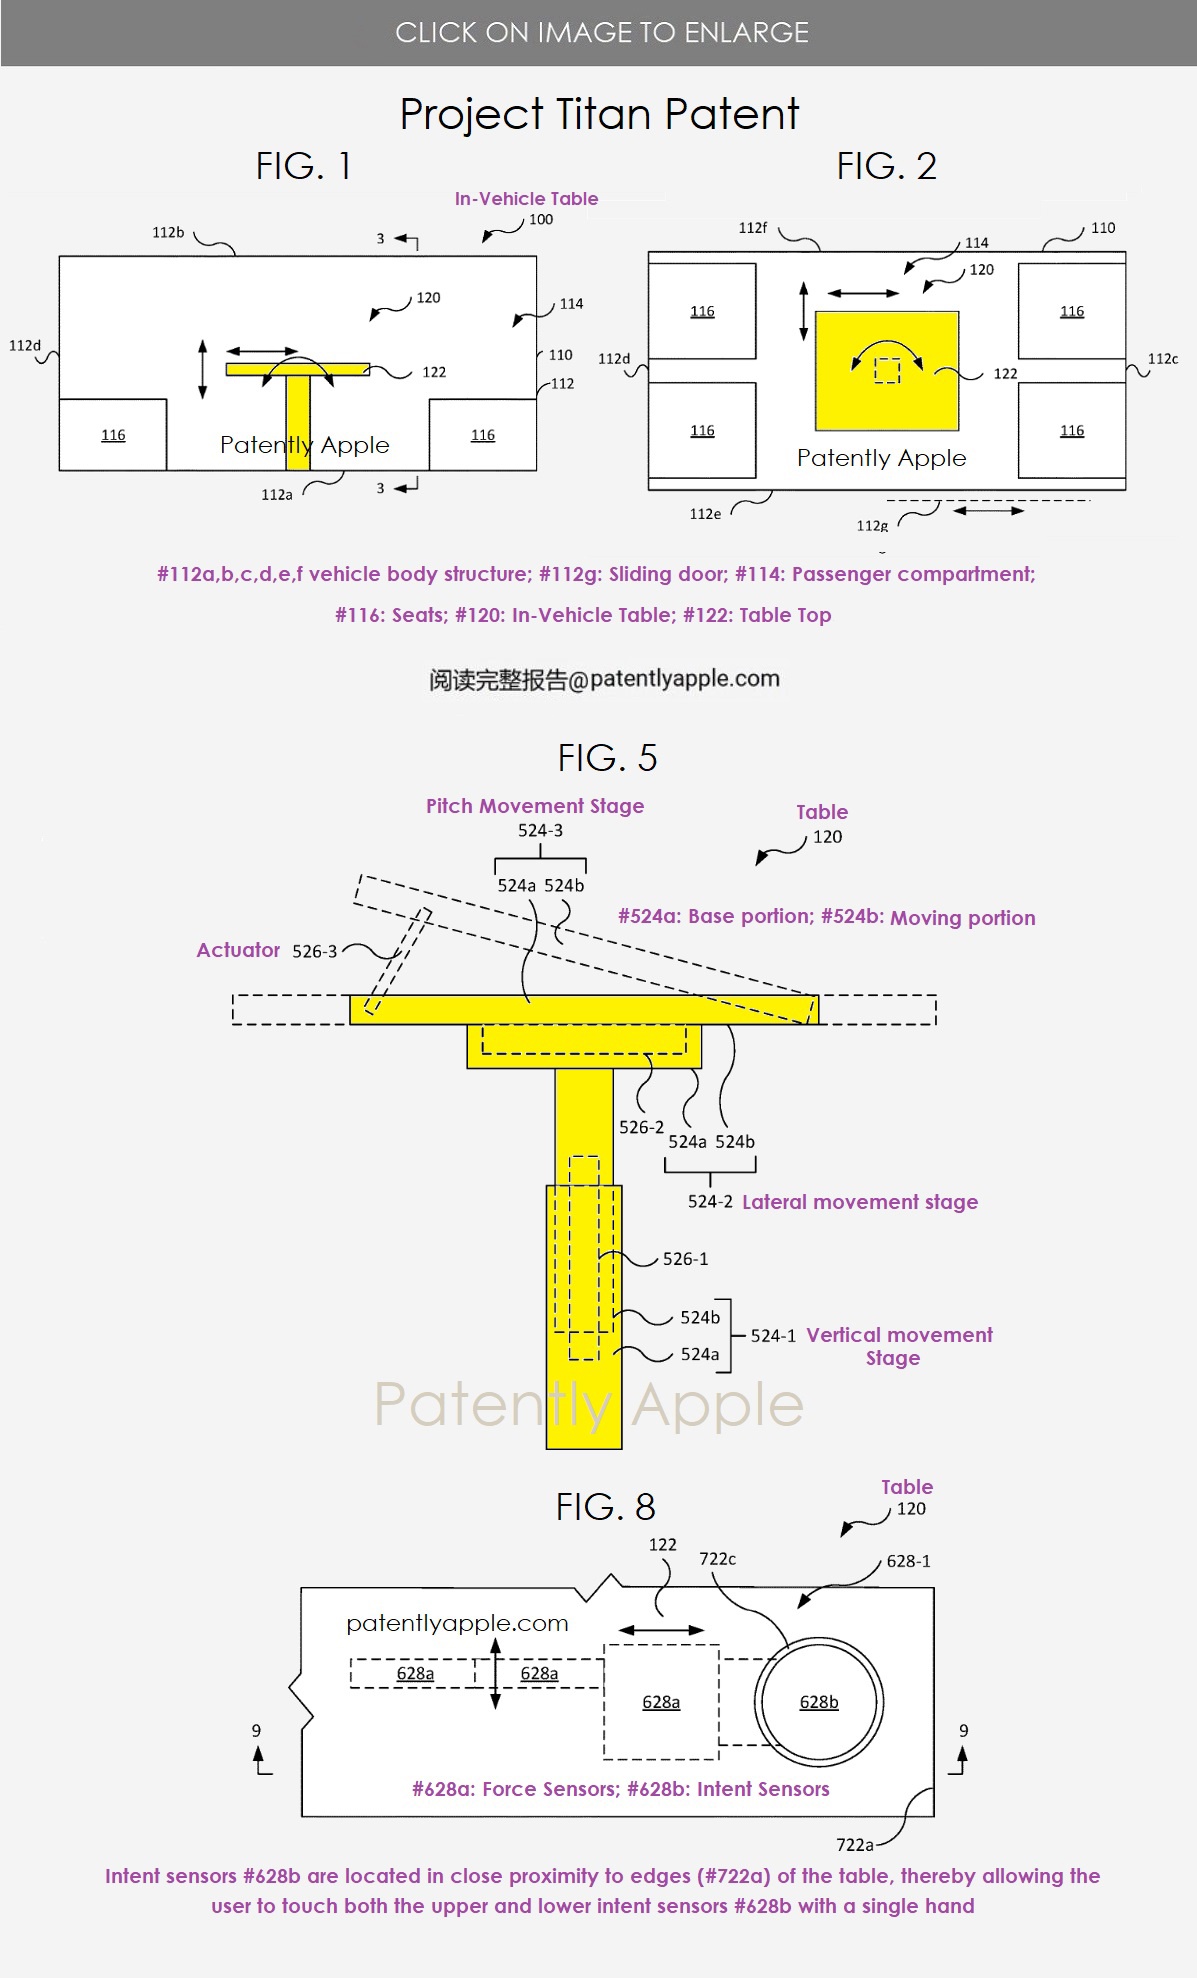 苹果获车载智能桌子专利：可自由调整位置、兼做大型显示器